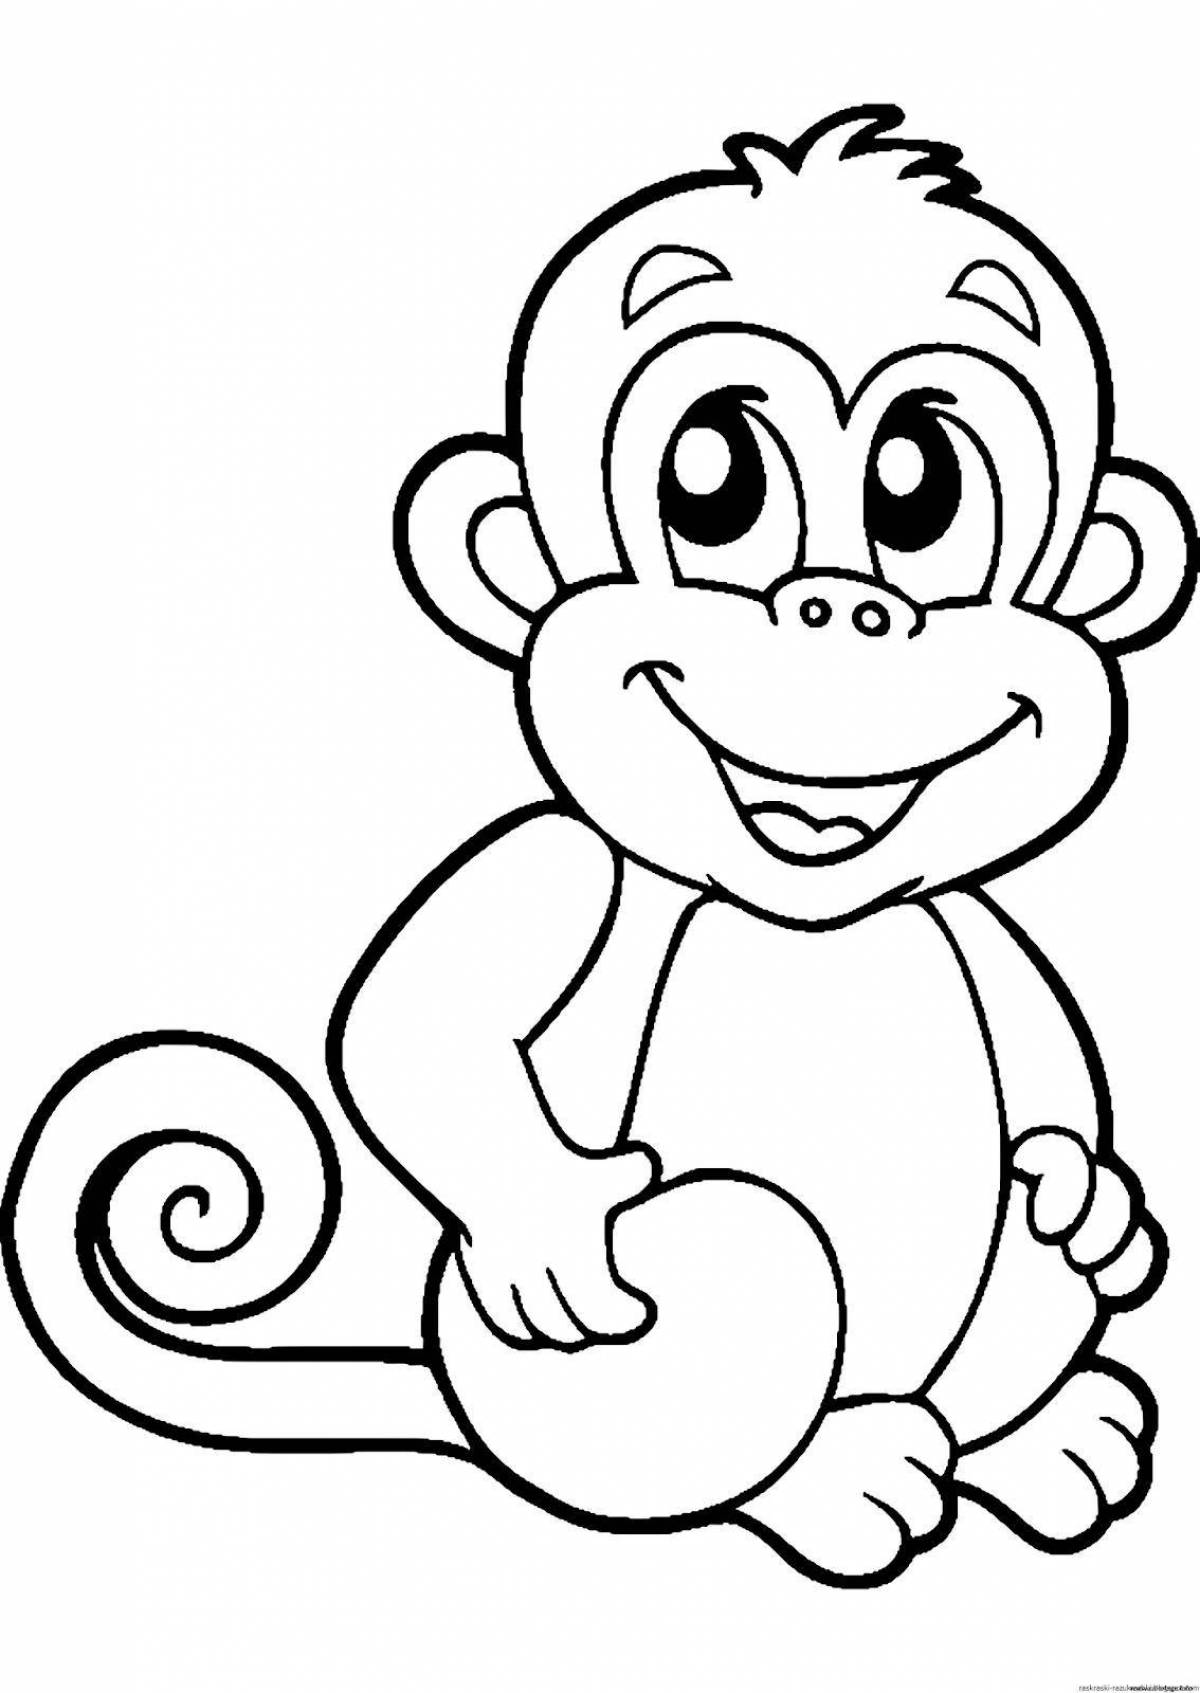 Остроумный рисунок обезьяны для детей